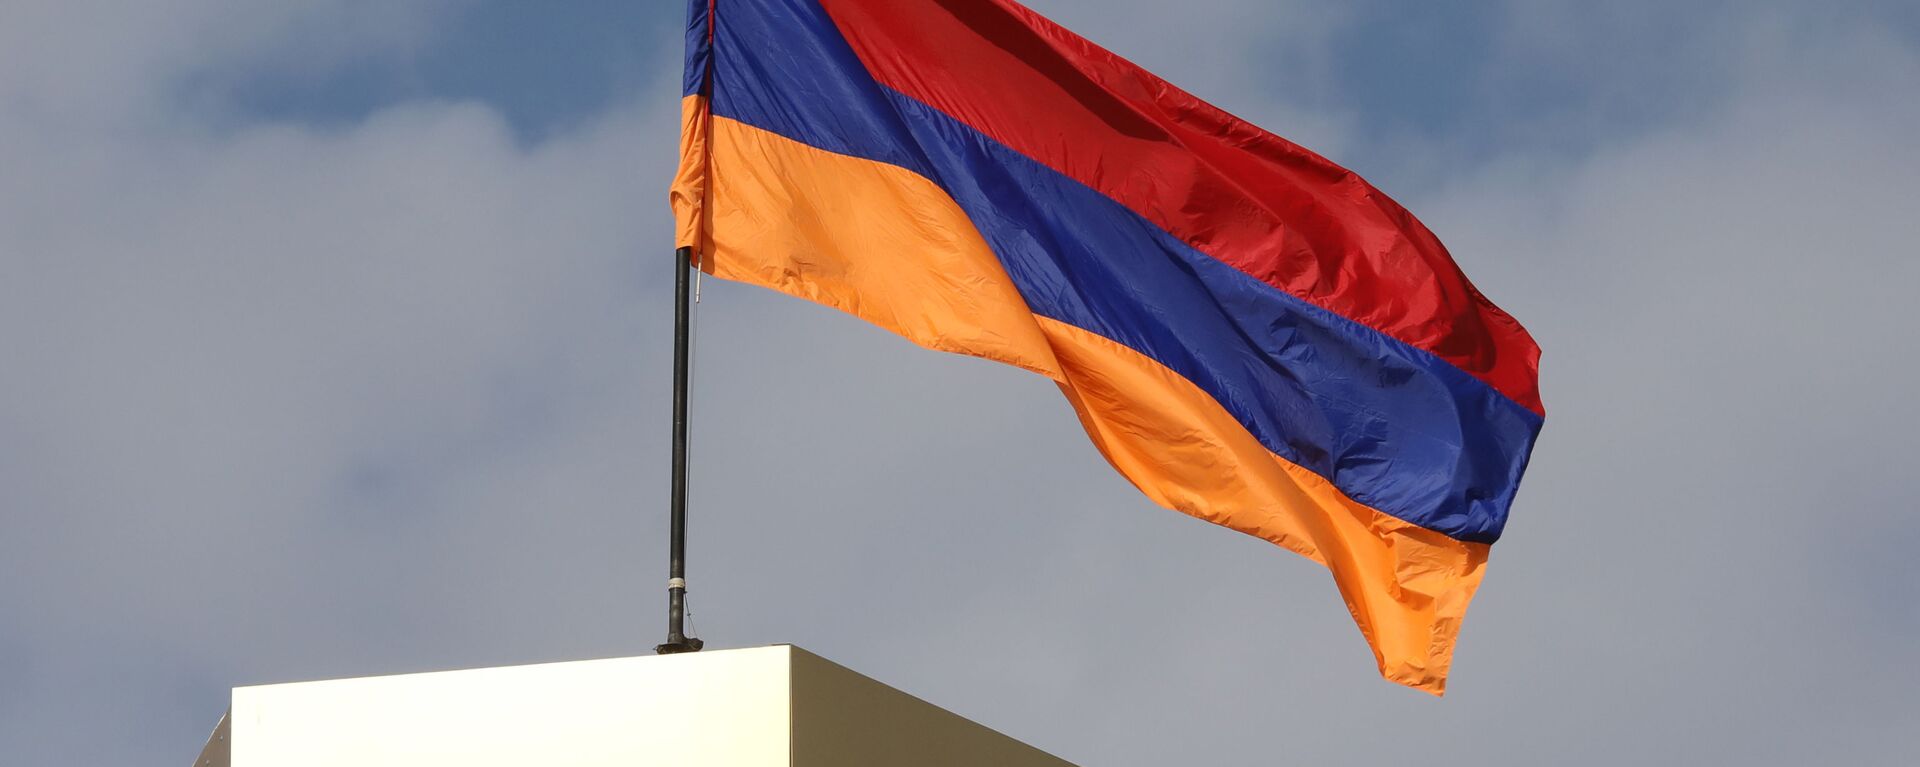 Ermenistan bayrak - Ermenistan bayrağı - Sputnik Türkiye, 1920, 22.04.2021